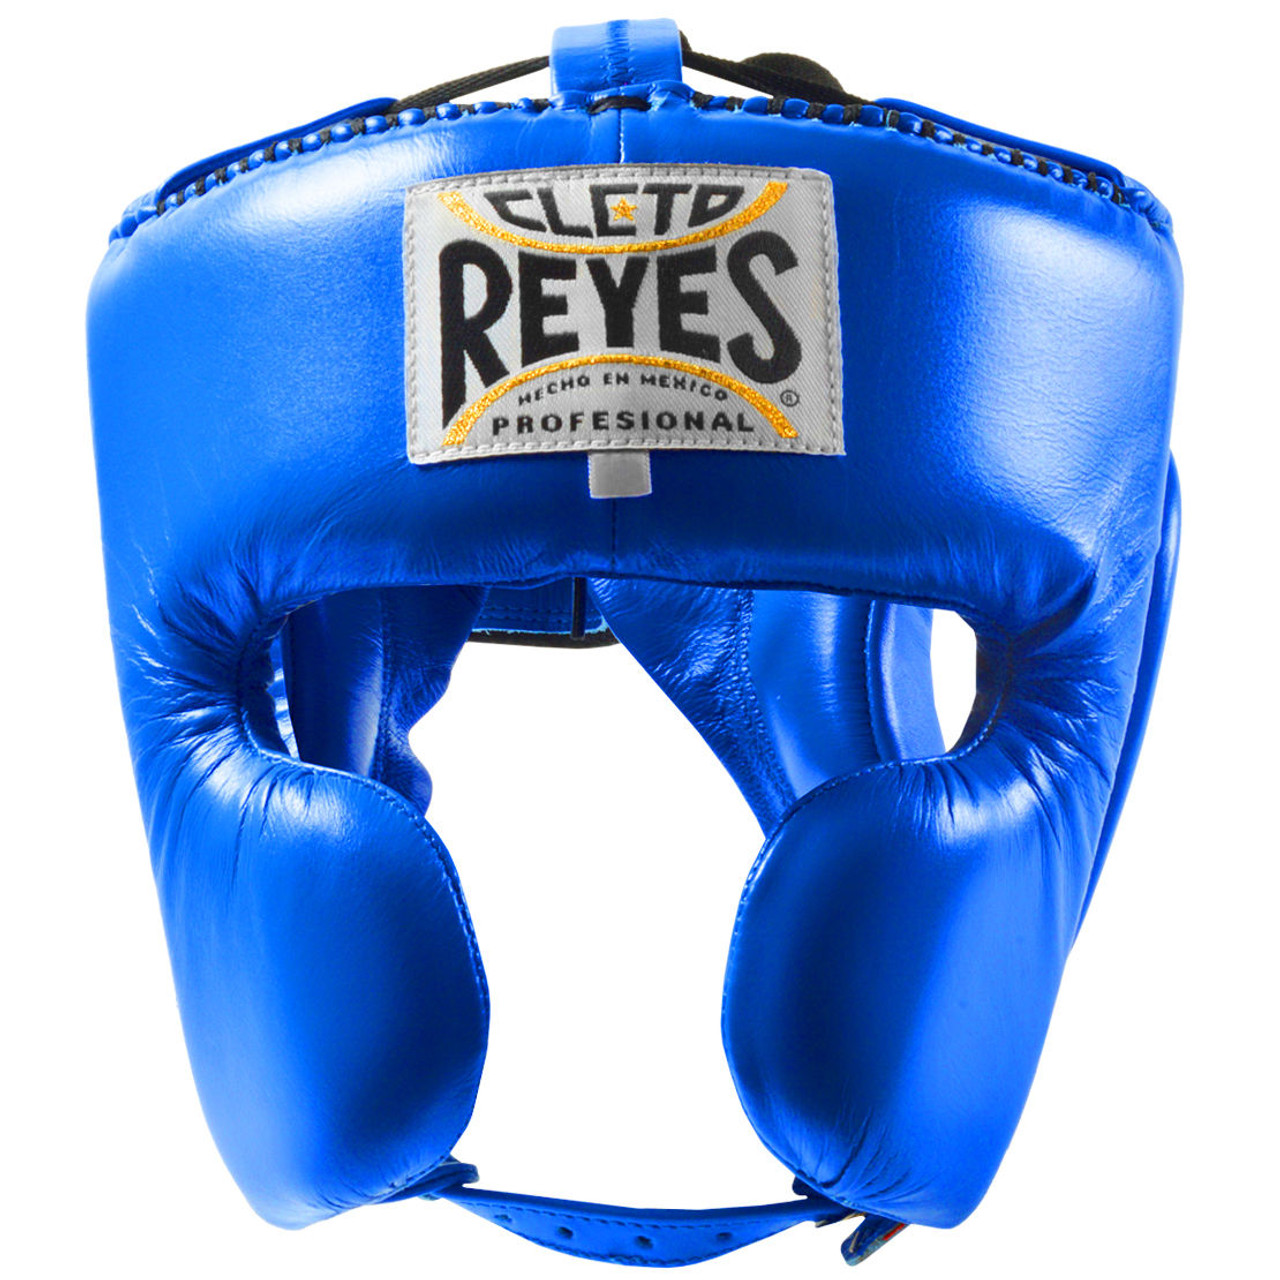 Cleto Reyes USA Boxing Equipment - Cleto Reyes USA